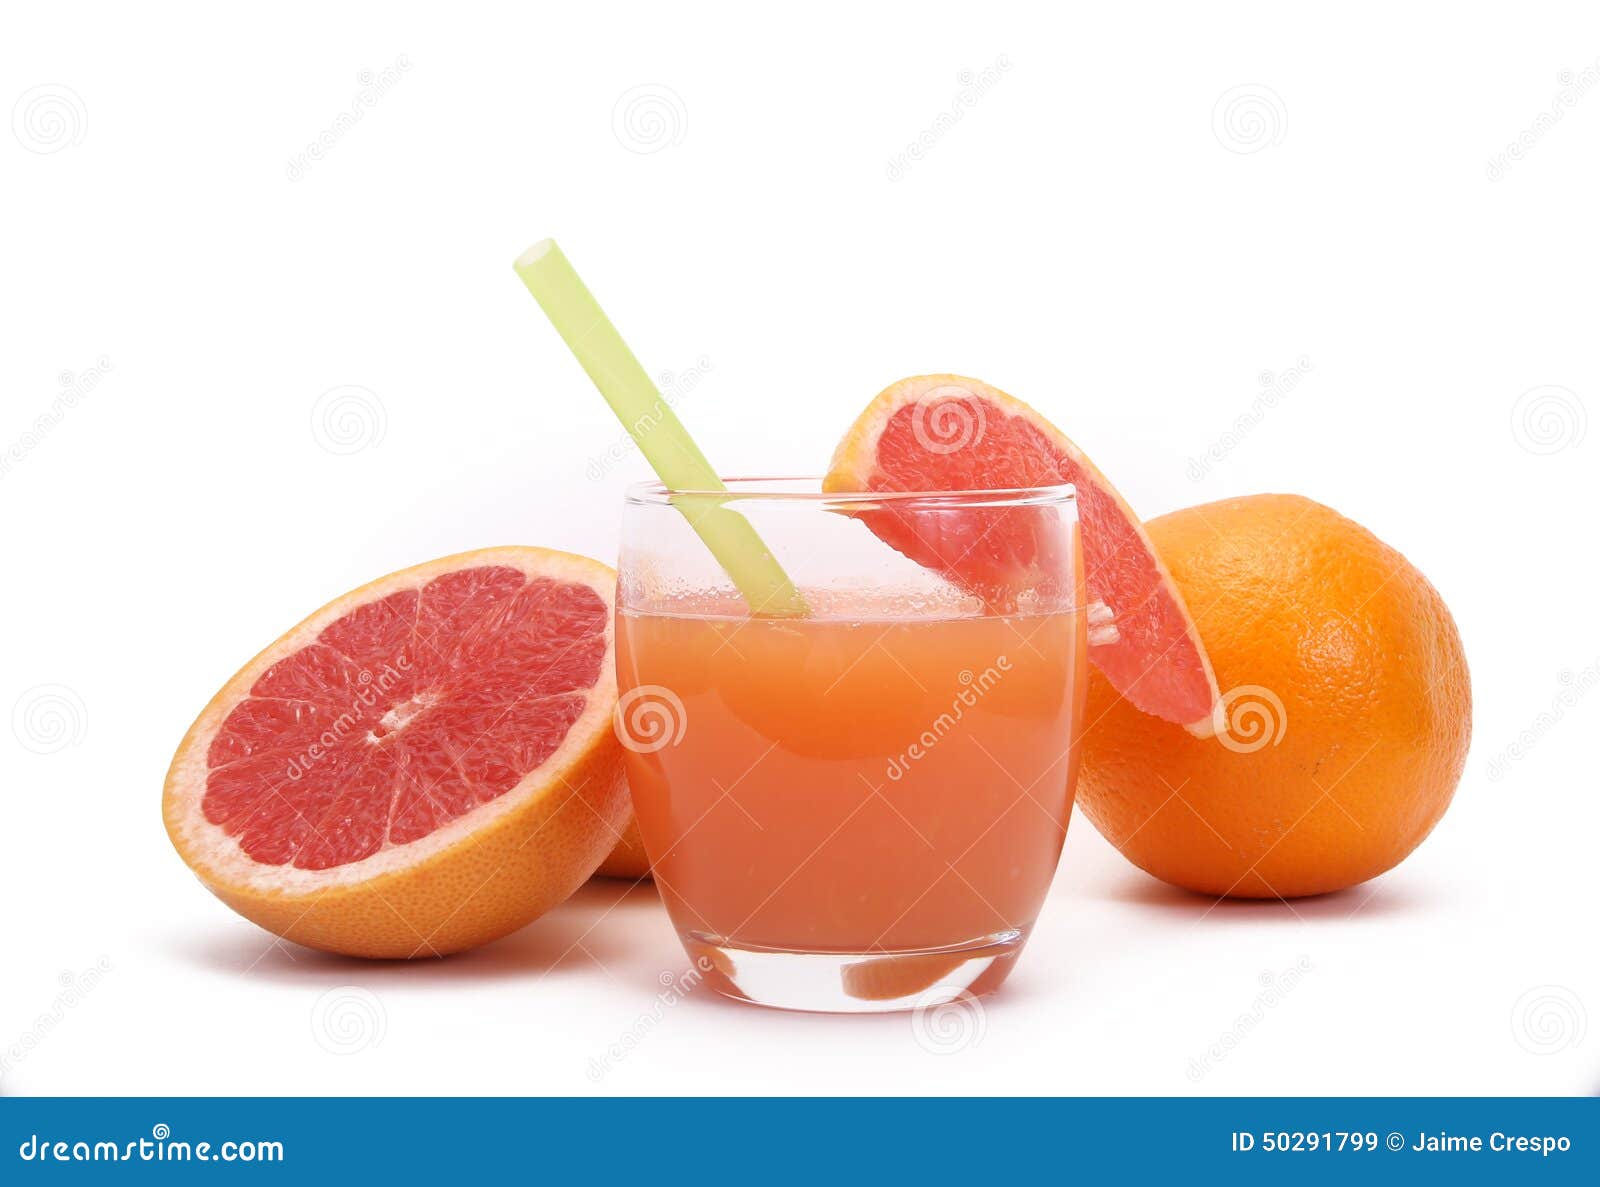 葡萄柚汁 库存照片. 图片 包括有 趣味, 颜色, 五颜六色, 食物, 可口, 葡萄柚, 节食, 绿色, 香橼 - 9440582